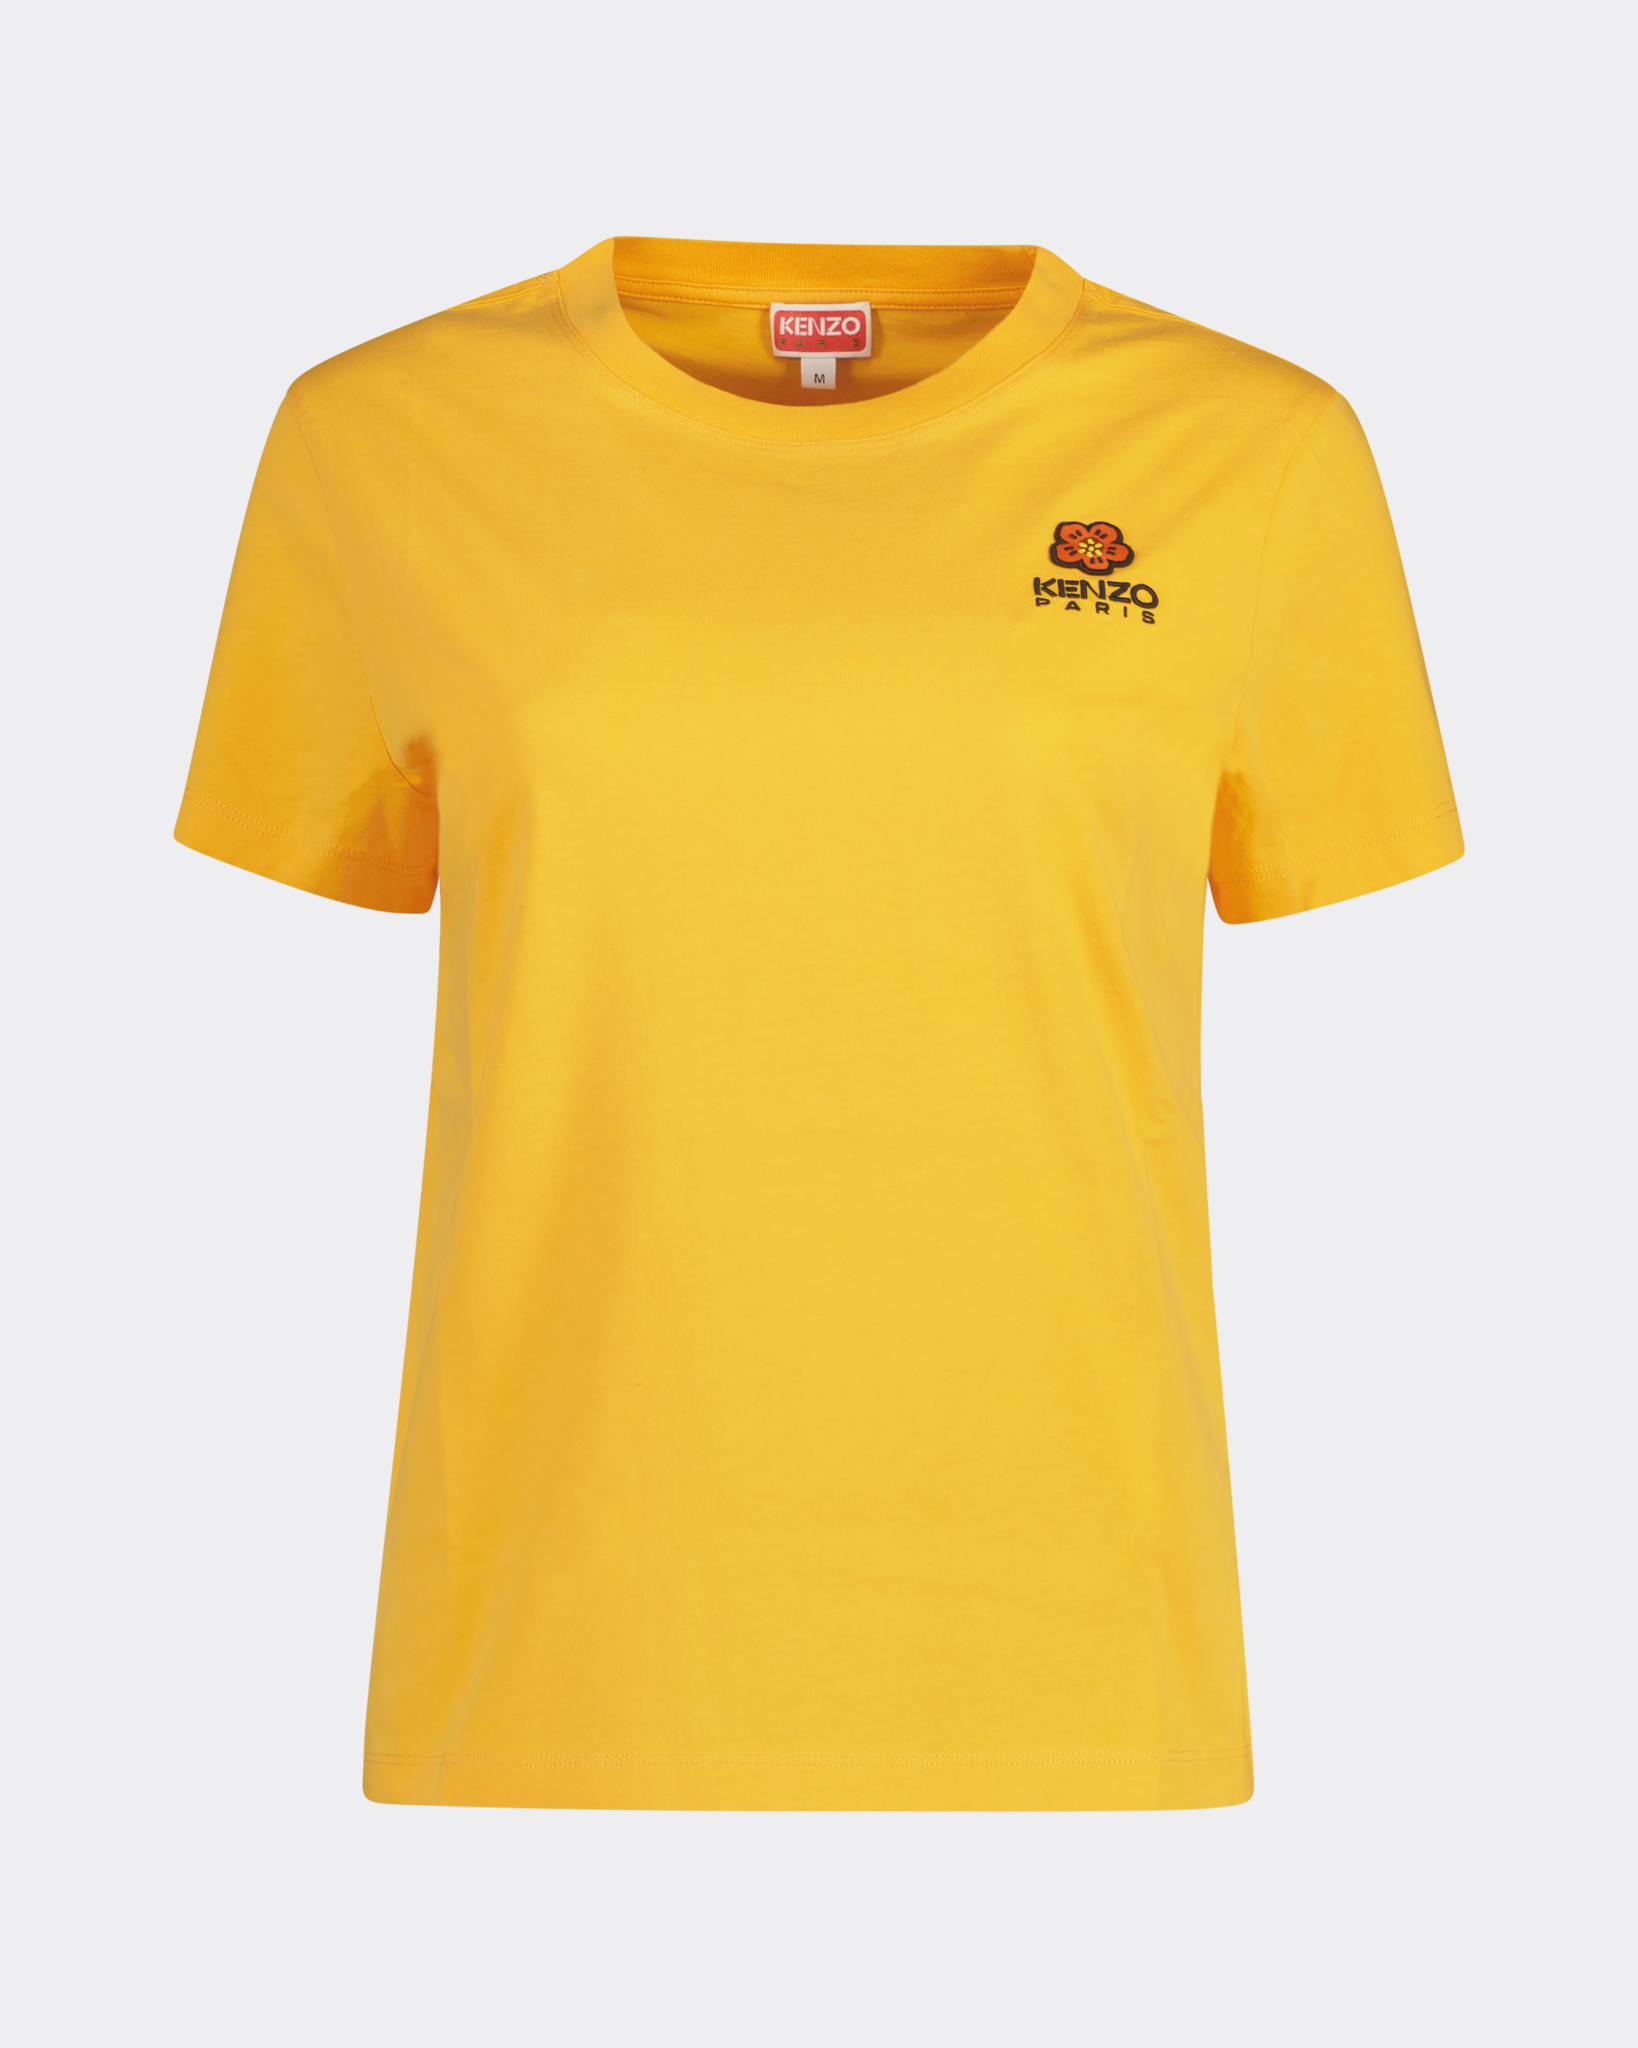 Beperkt Onvoorziene omstandigheden Verbonden Kenzo by Nigo Boke Flower Logo T-shirt Oranje - Beachim